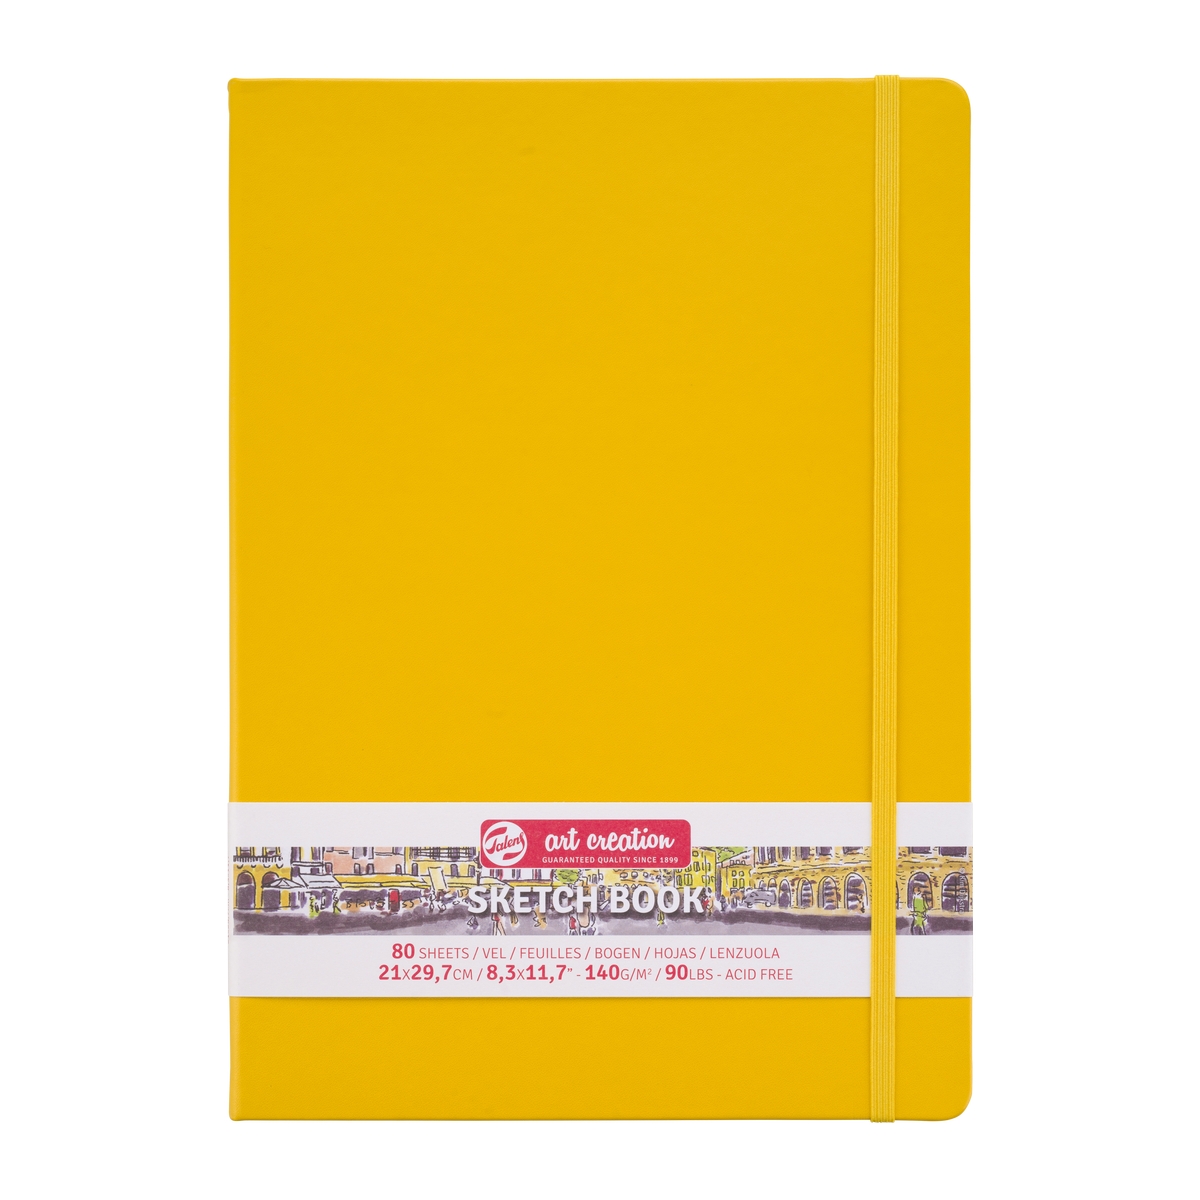 Скетчбук для рисования ARTCREATION 140г/кв.м 210х300мм 80л. желтый по 1 072.00 руб от Royal Talens